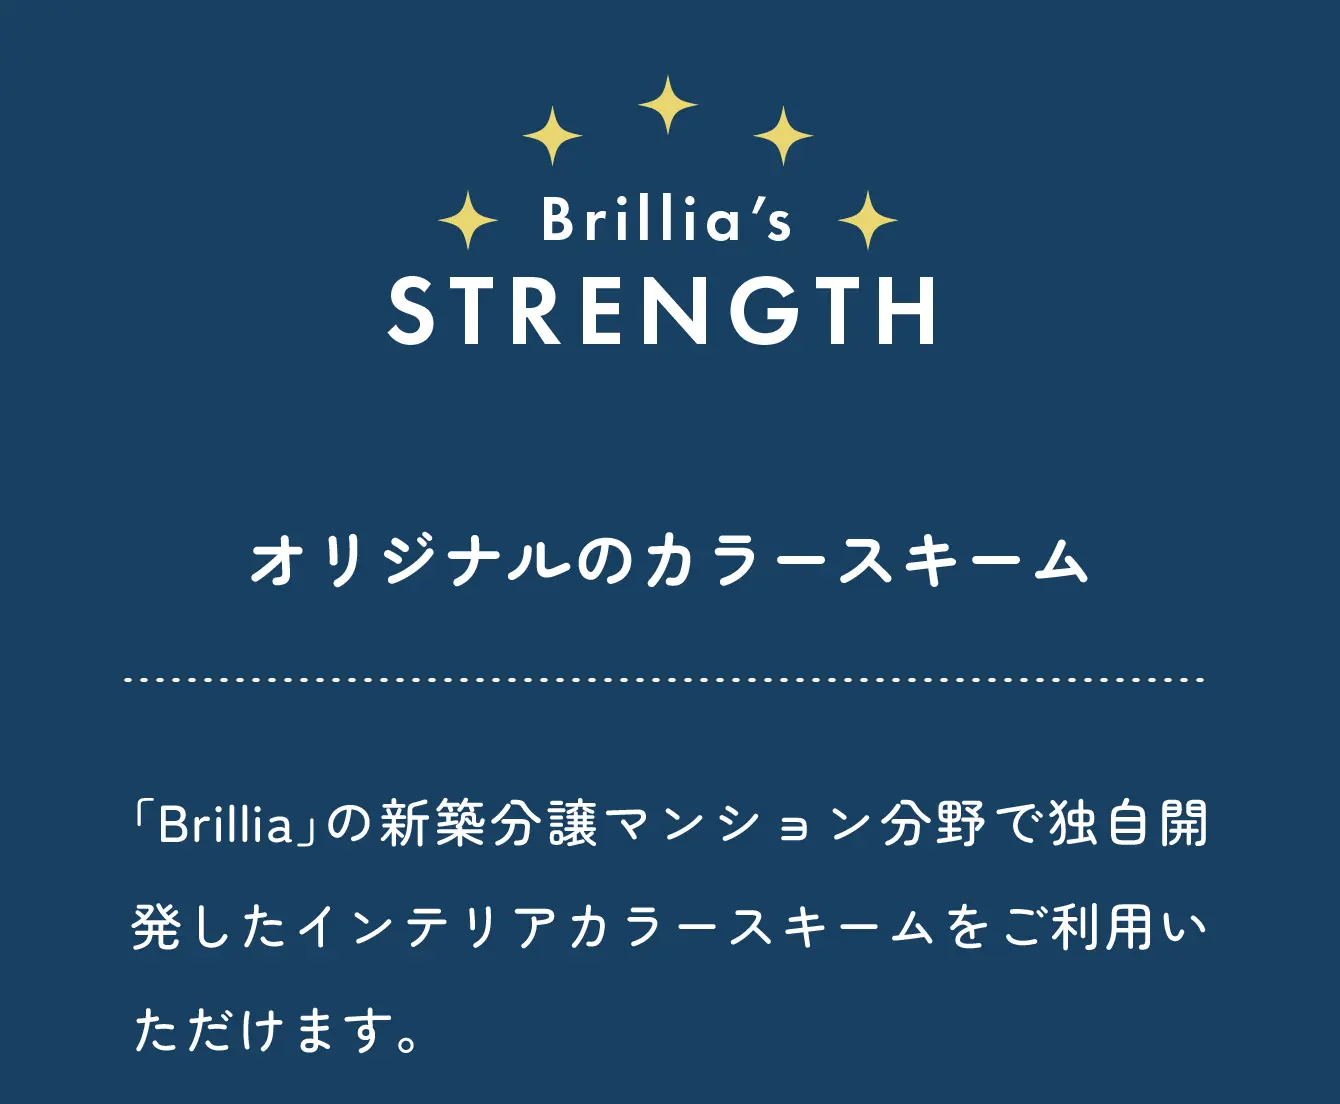 Brillia's strength オリジナルのカラースキーム